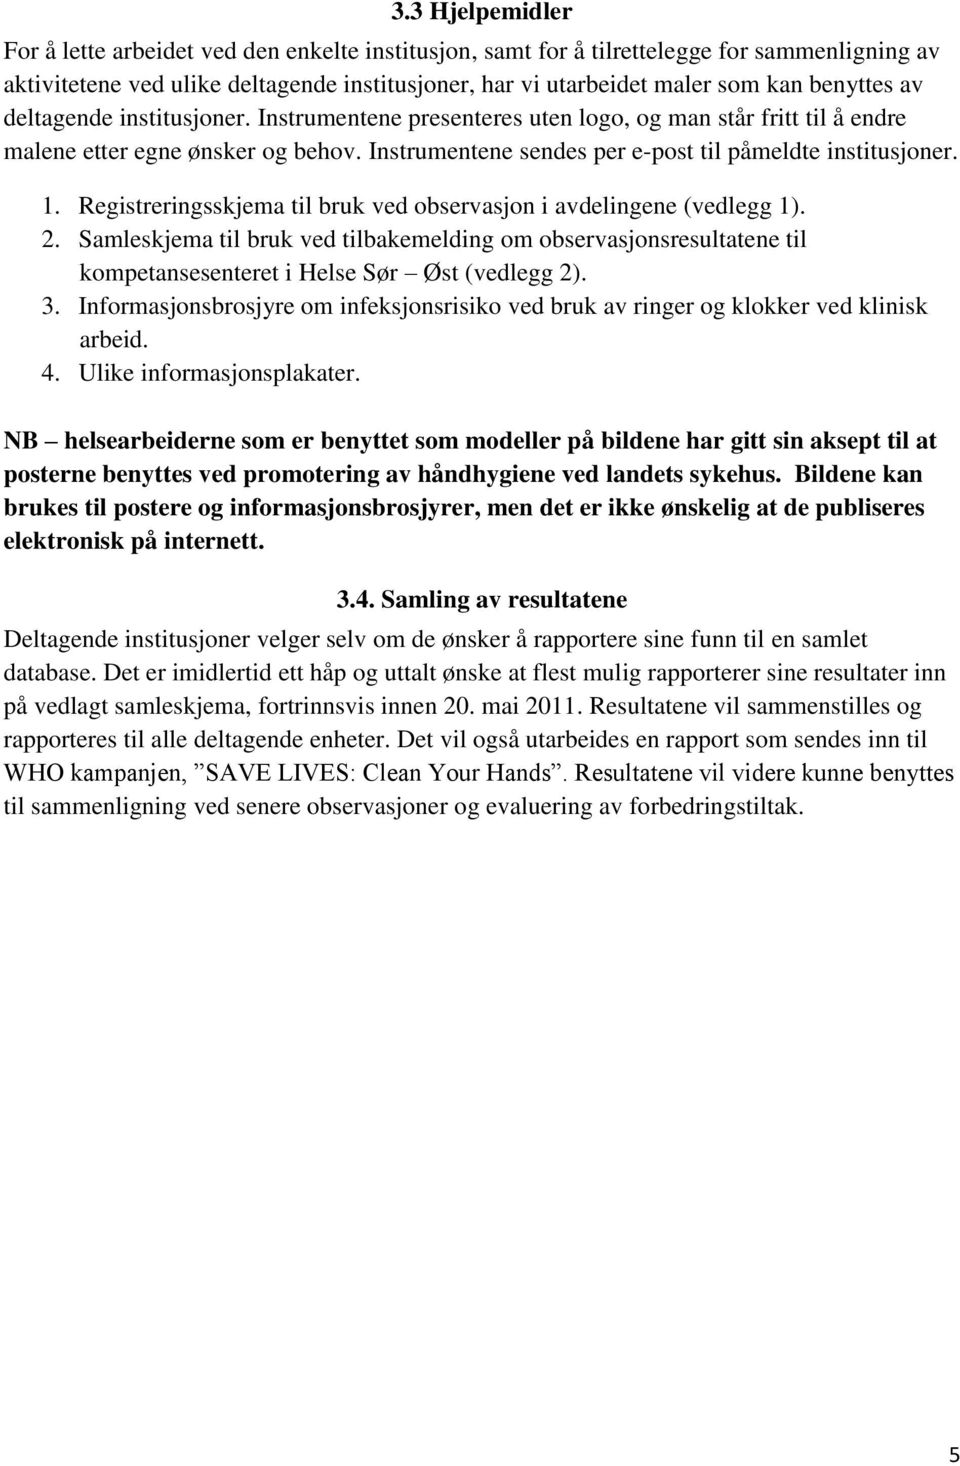 1. Registreringsskjema til bruk ved observasjon i avdelingene (vedlegg 1). 2. Samleskjema til bruk ved tilbakemelding om observasjonsresultatene til kompetansesenteret i Helse Sør Øst (vedlegg 2). 3.